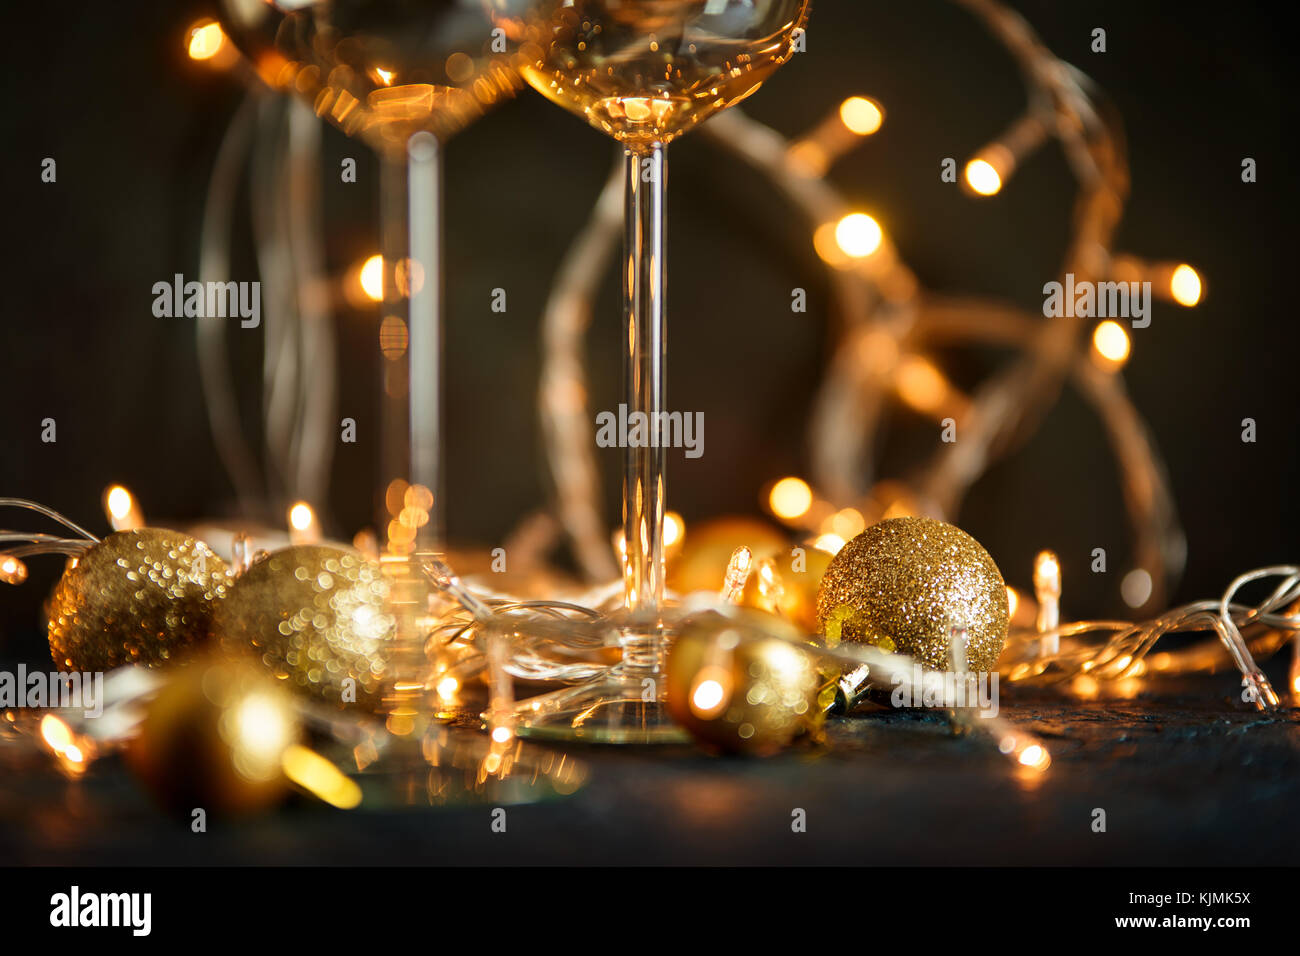 Zwei Gläser für Wein und goldene Weihnachtskugeln vor dem Hintergrund einer verschwommenen Golden Lights. geringe Tiefenschärfe. Stockfoto